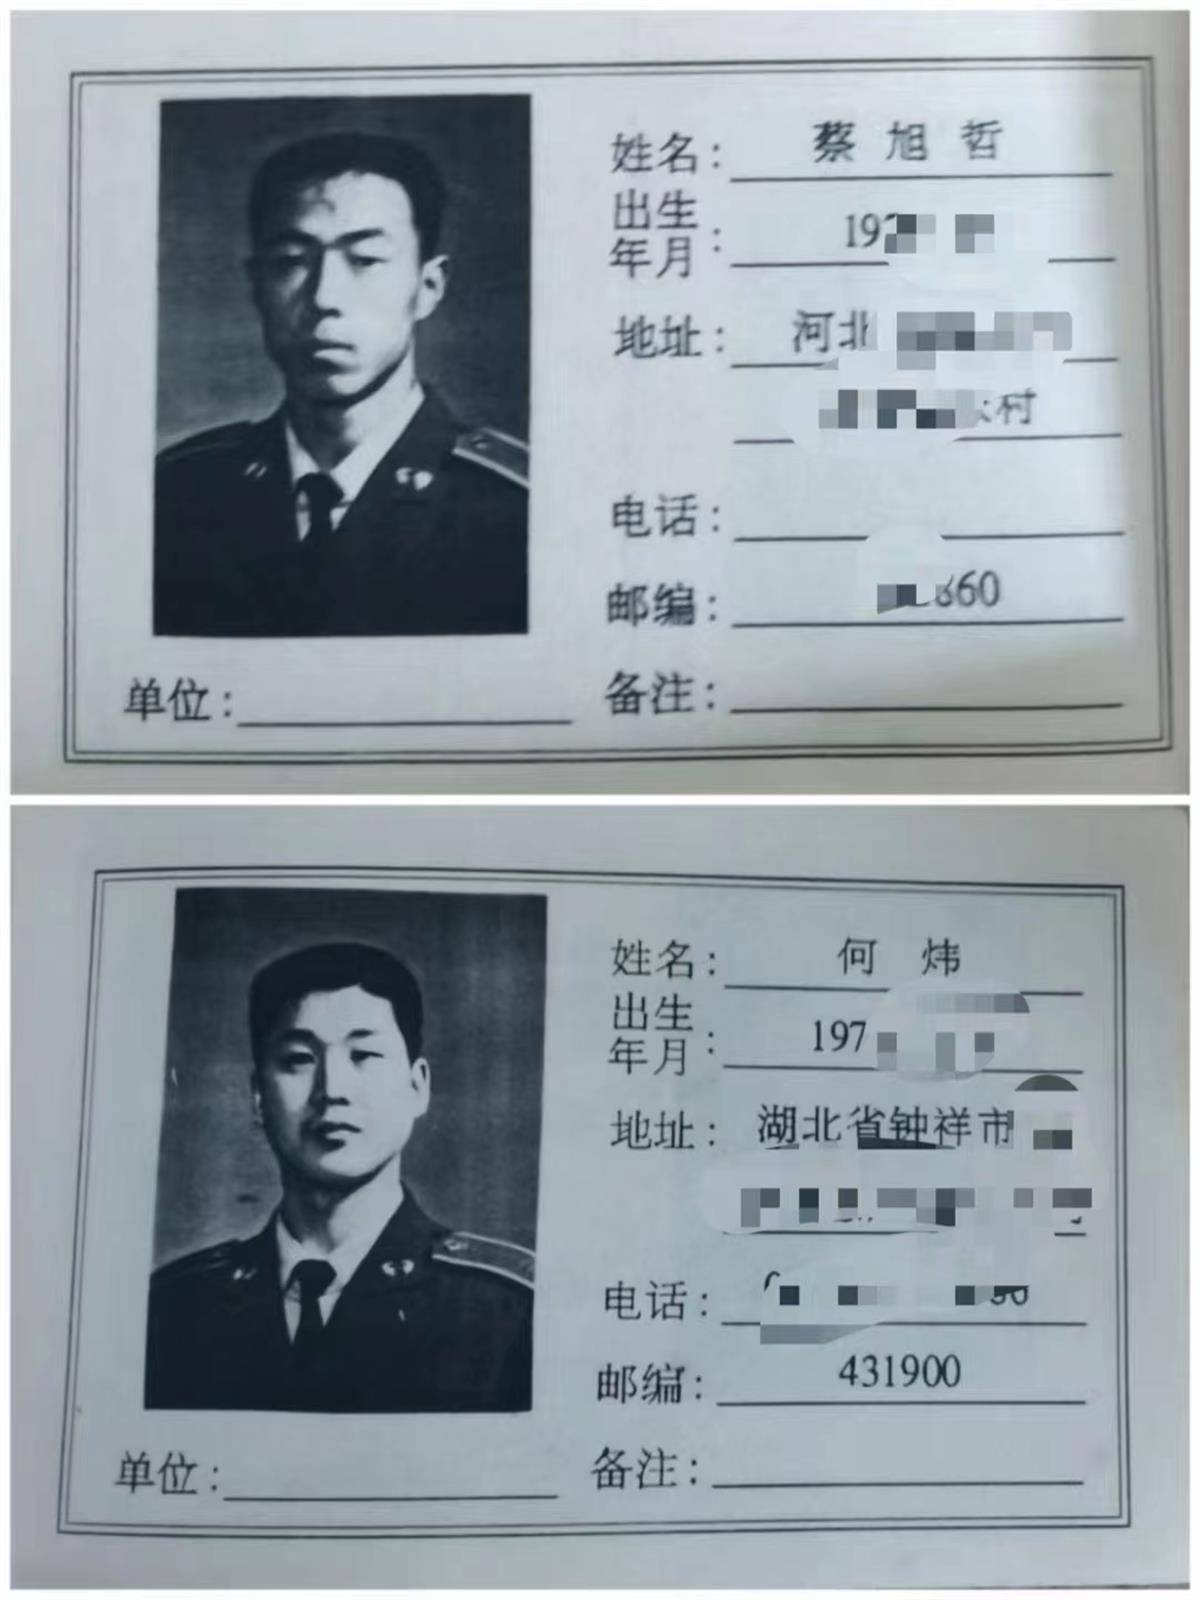 1995年,何炜和蔡旭哲一同入伍,考入原空军长春飞行学院保定分院,同属